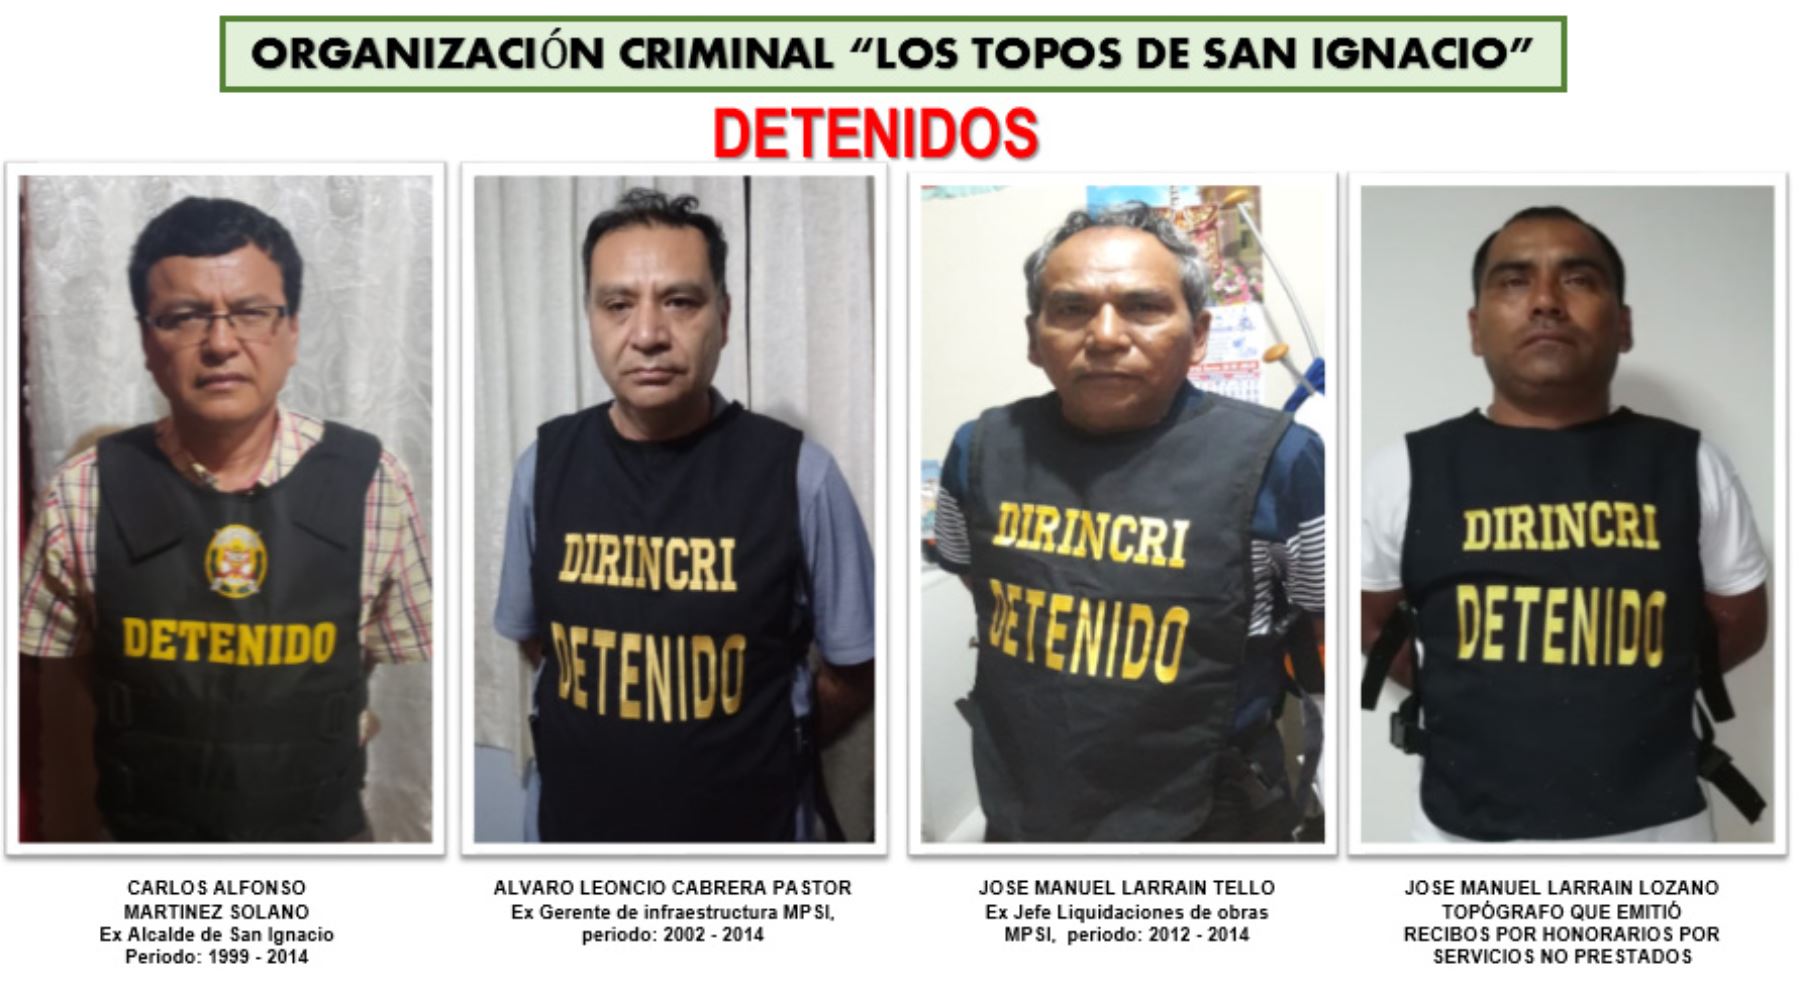 El exalcalde de San Ignacio Carlos Martínez Solano y otros 10 miembros de la organización criminal "Los Topos de San Ignacio" fueron detenidos hoy por la Policía Nacional.